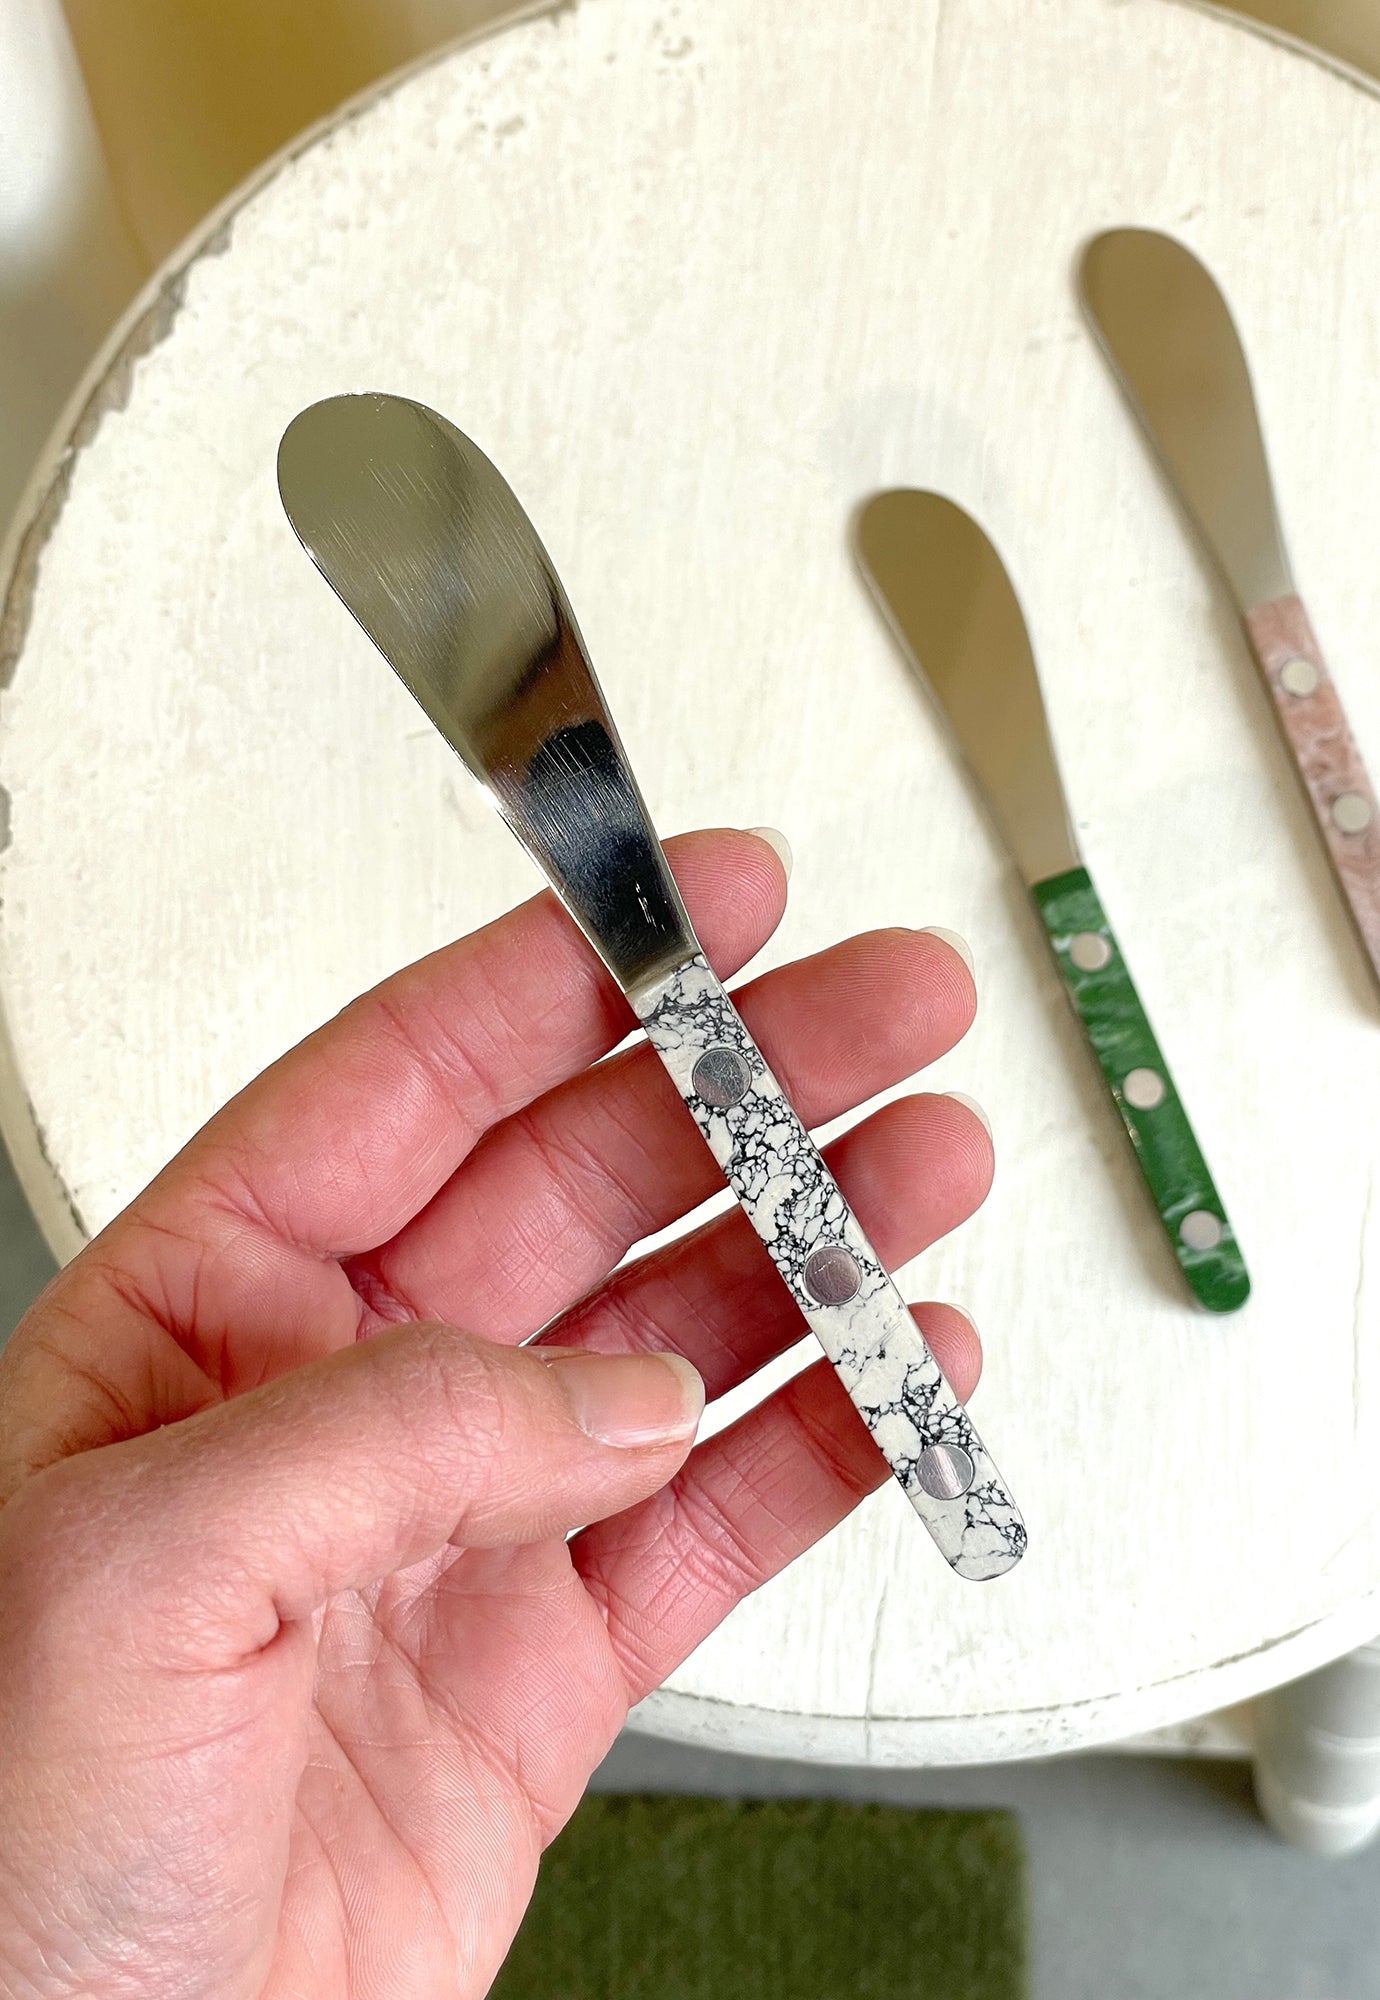 tasteology - spreader knife